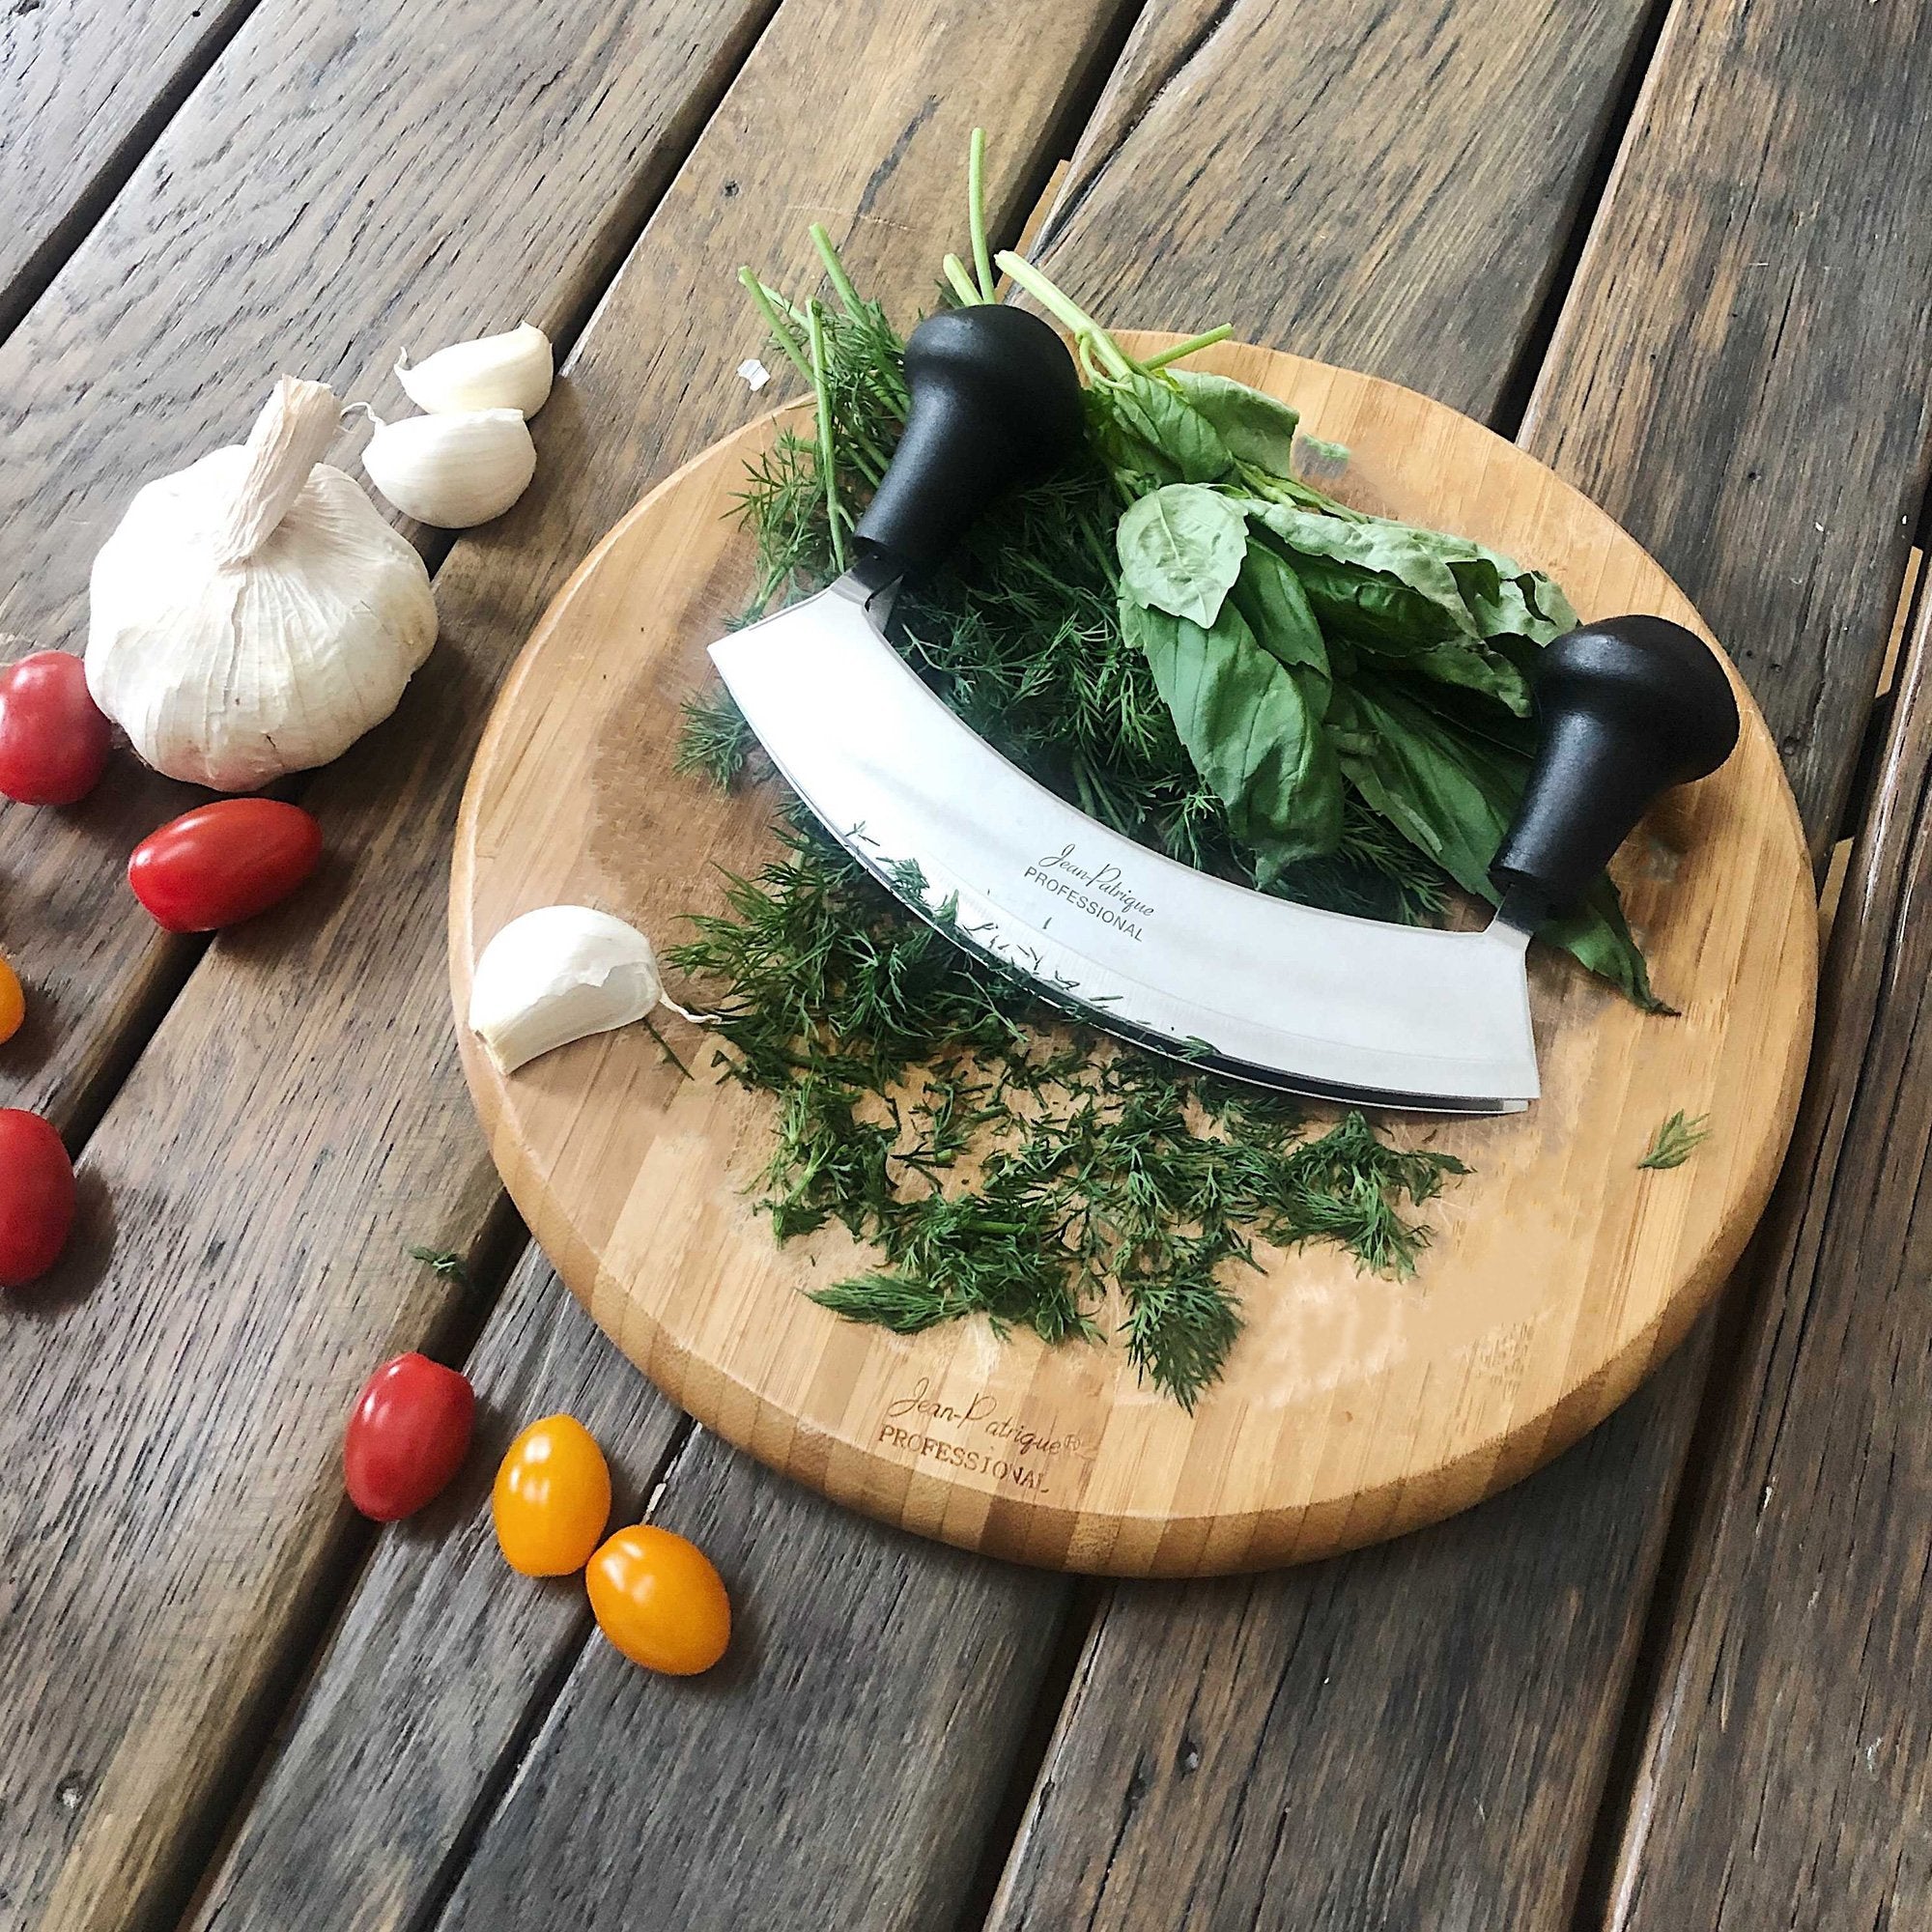 Mezzaluna Herb & Salad Chopper - Double Blade – Jean Patrique Professional  Cookware